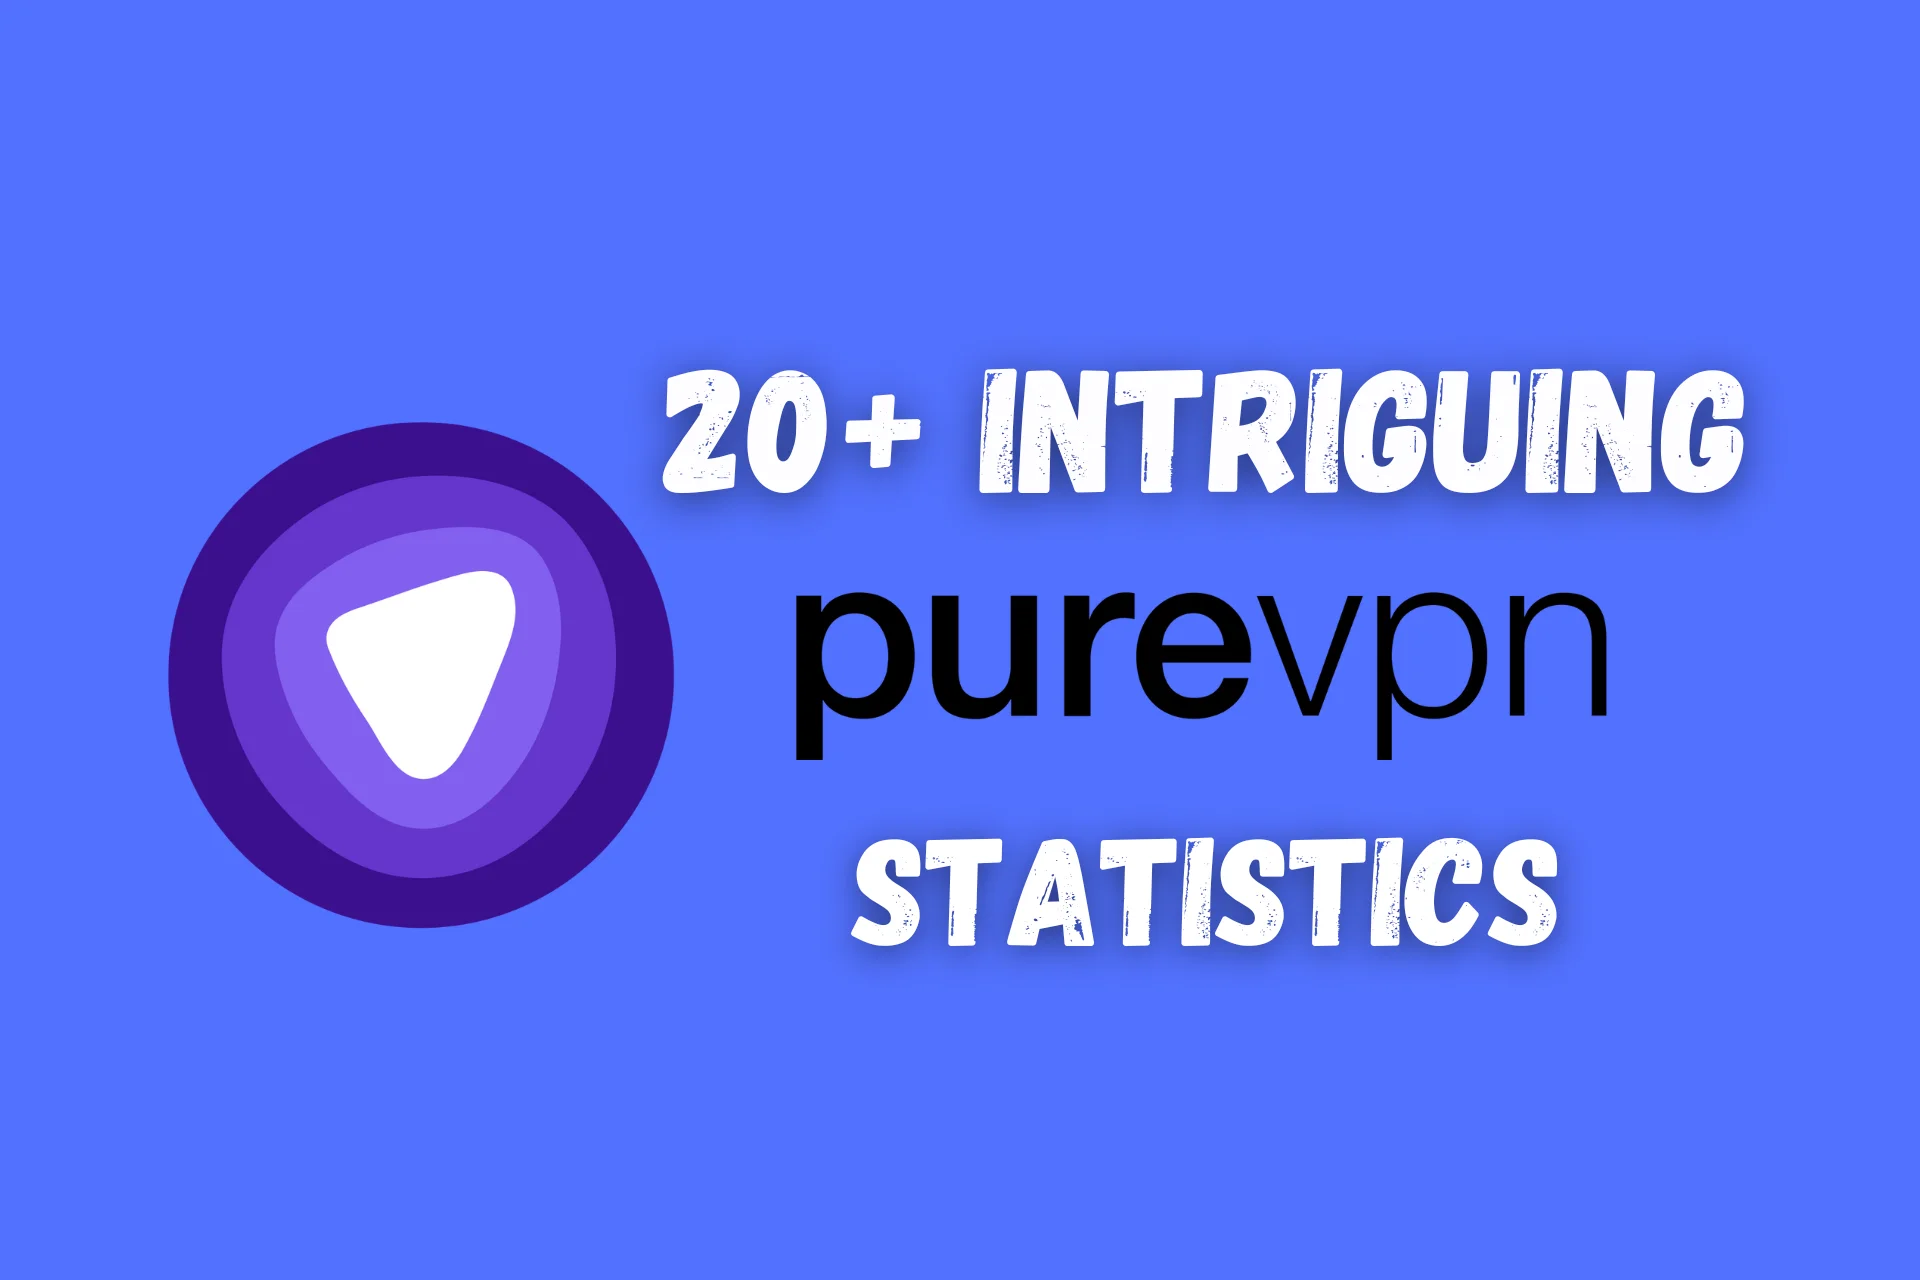 purevpn statistics